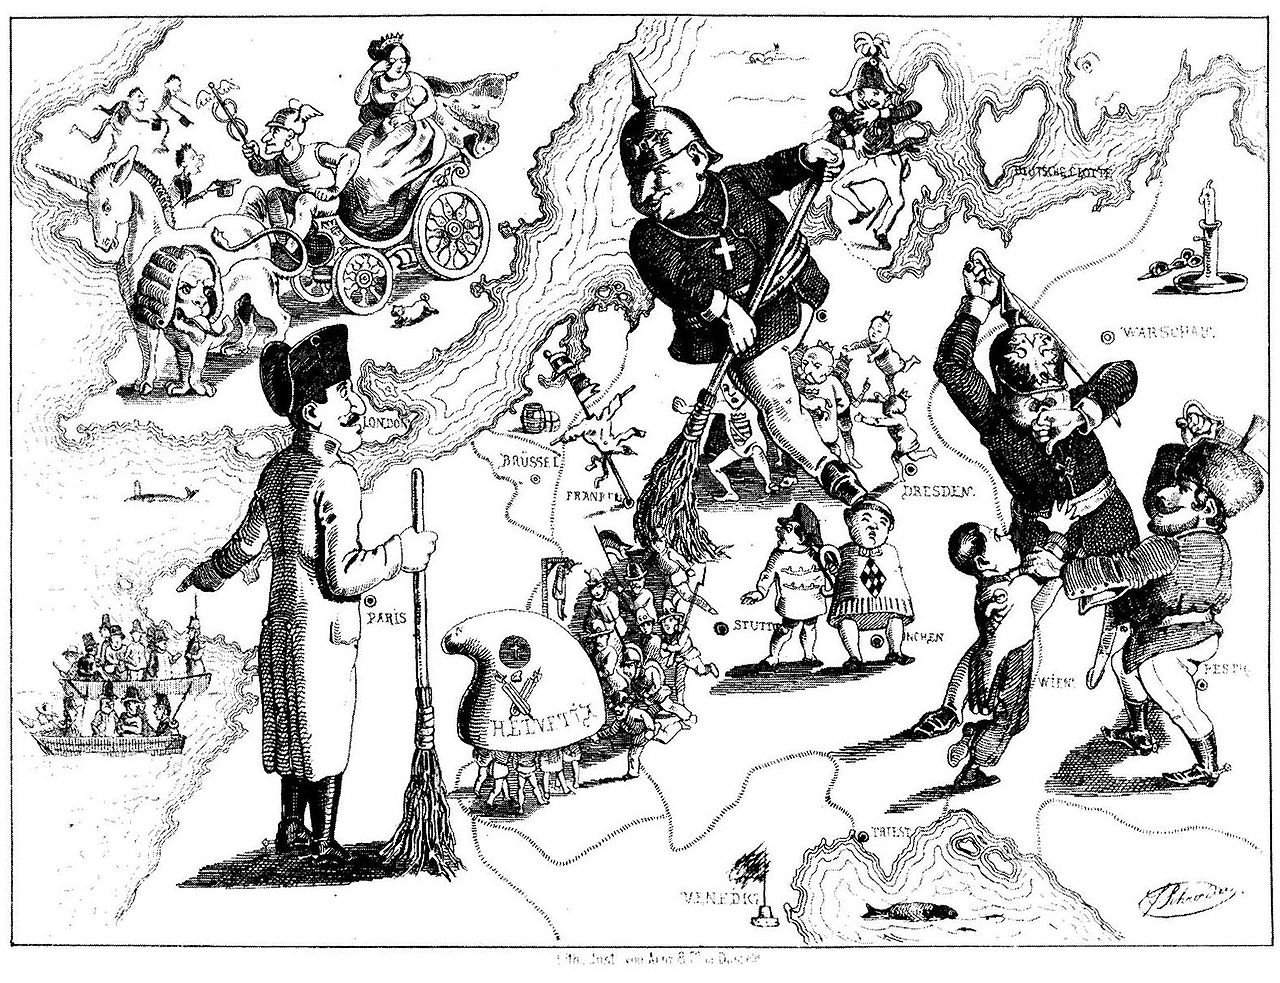 Een karikatuur van Ferdinand Schröder over de nederlaag van de revoluties van 1848-1849 in Europa (gepubliceerd in Düsseldorfer Monatshefte, augustus 1849)